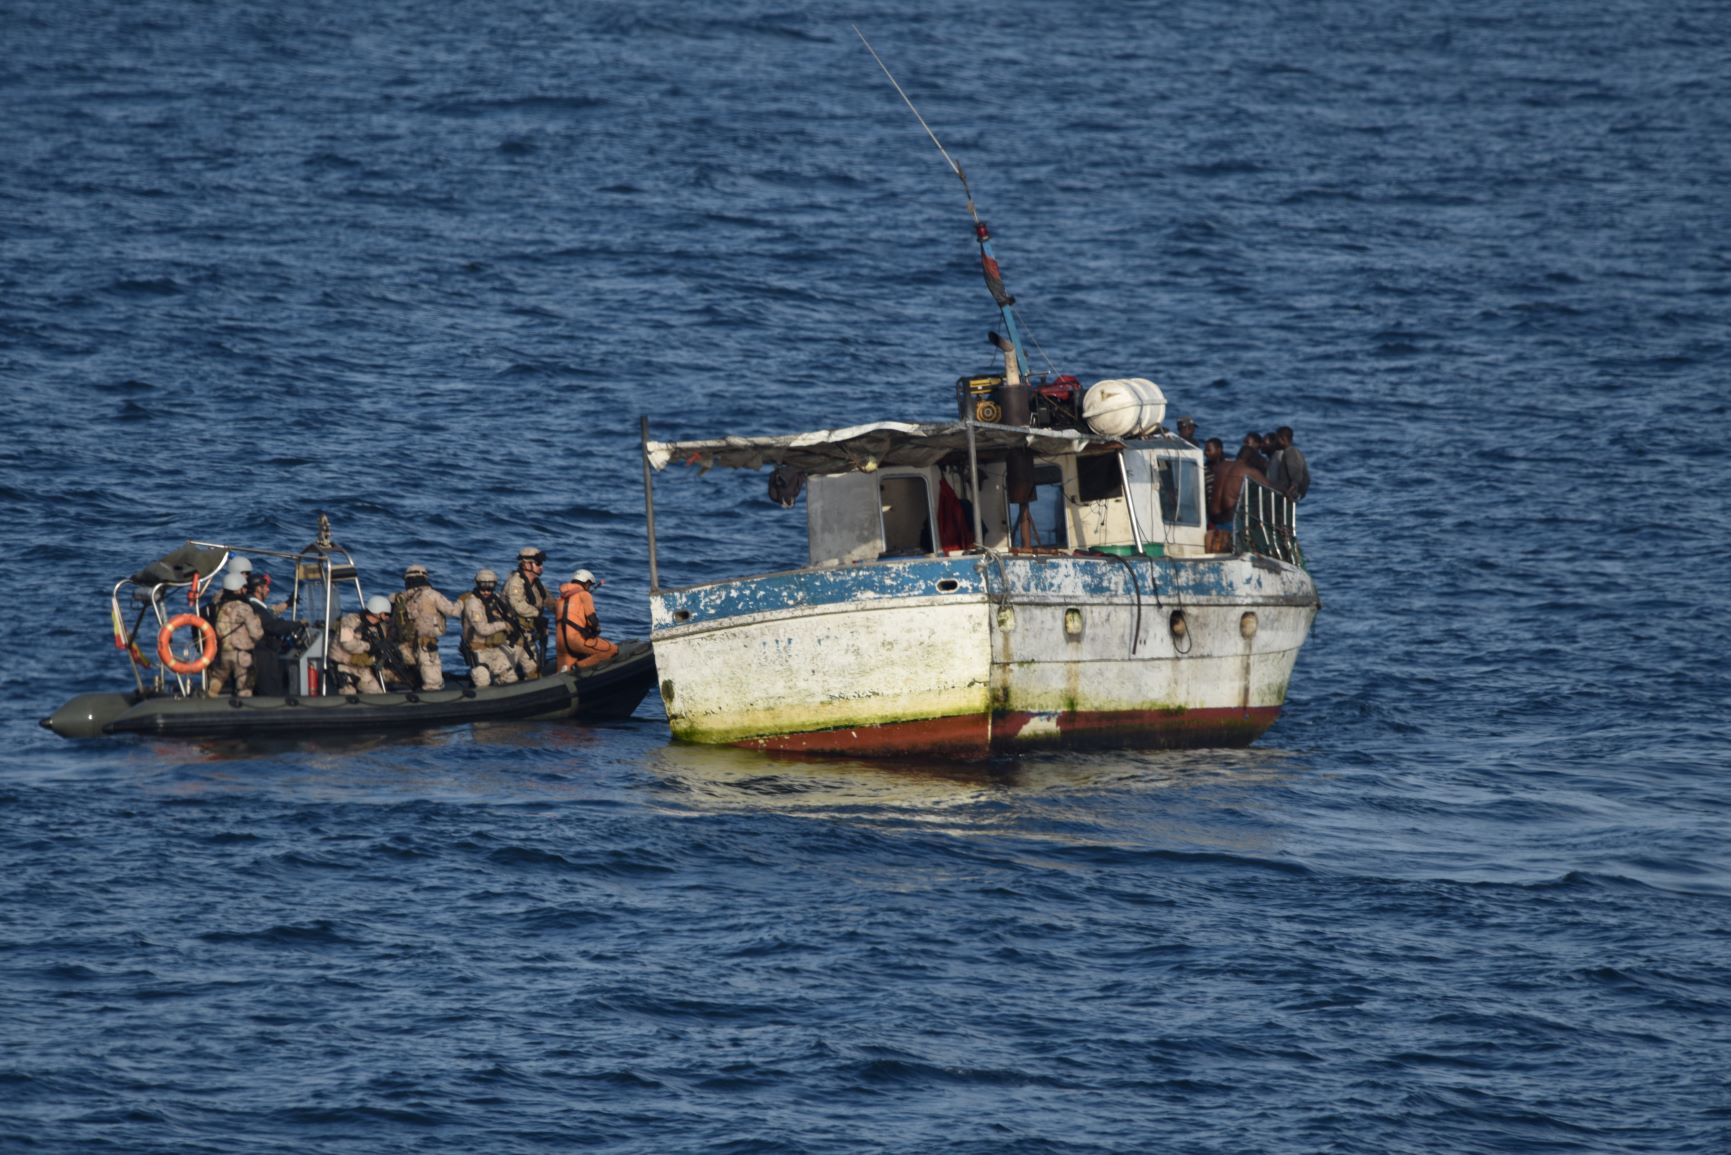 The patrol boat “Atalaya” assists a drifting fishing boat in Angolan coast